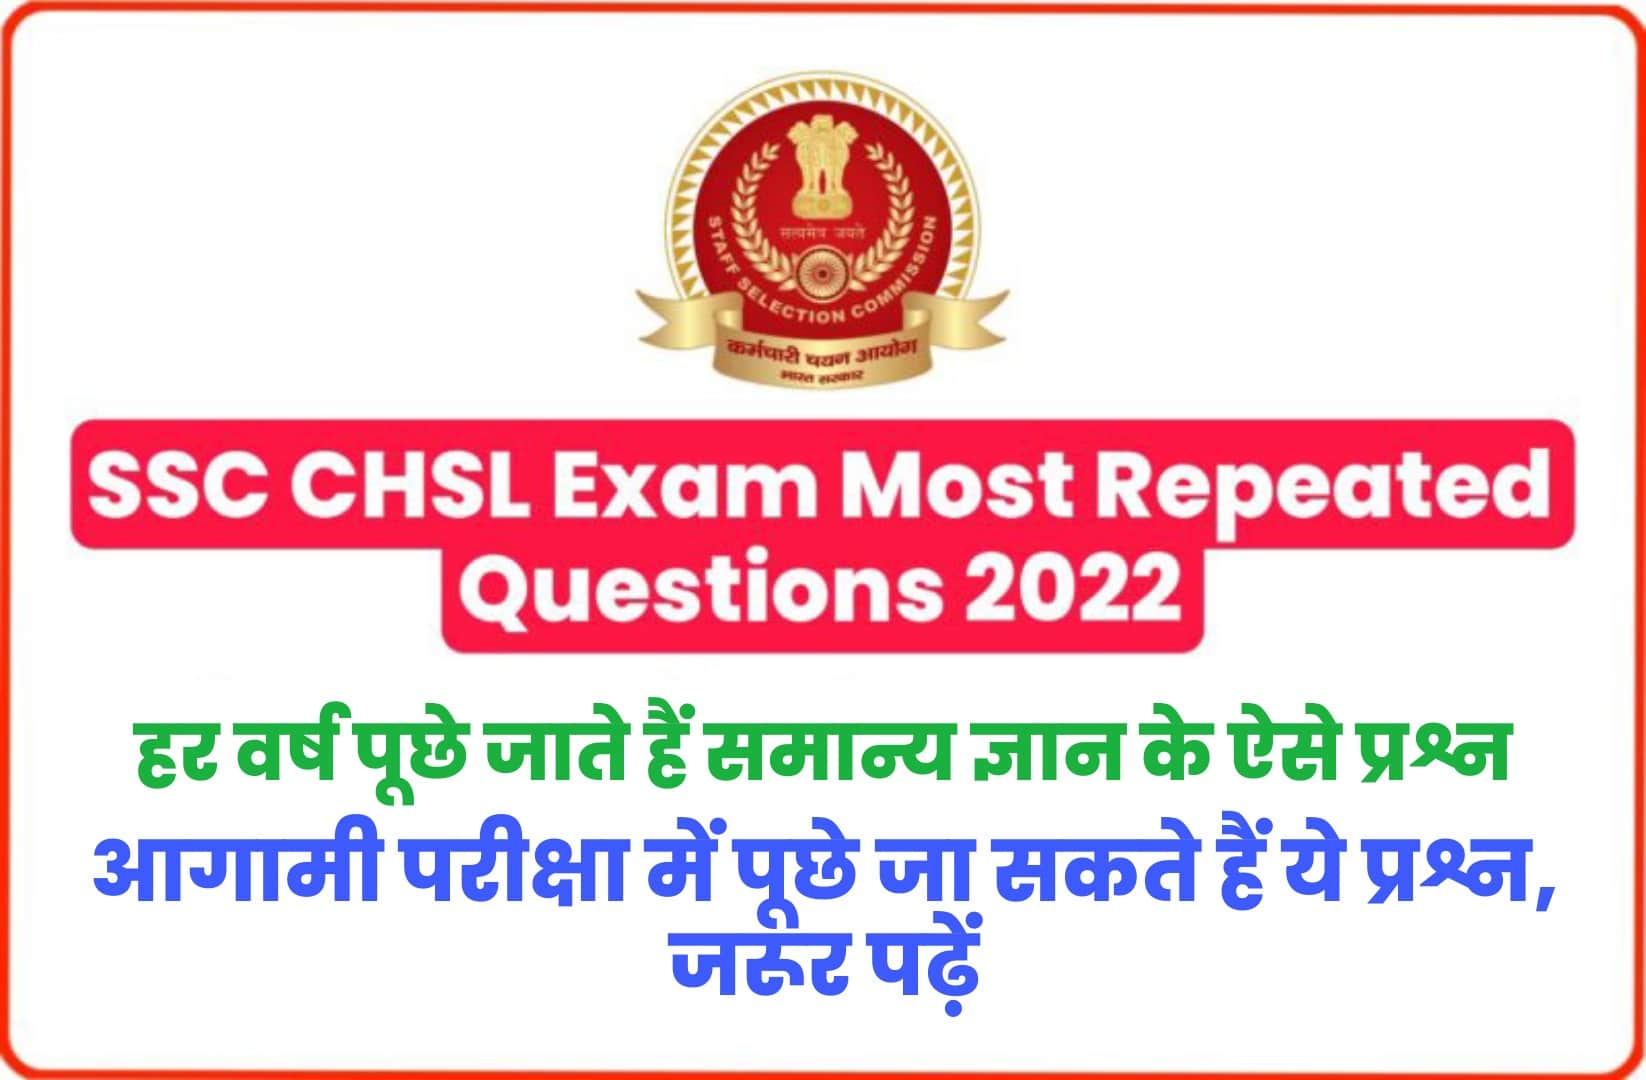 SSC CHSL Exam 2022 Most Repeated Questions : एसएससी सीएचएसएल परीक्षा में हर वर्ष पूछे जाते हैं सामान्य ज्ञान के ऐसे प्रश्न, जरूर पढ़ें